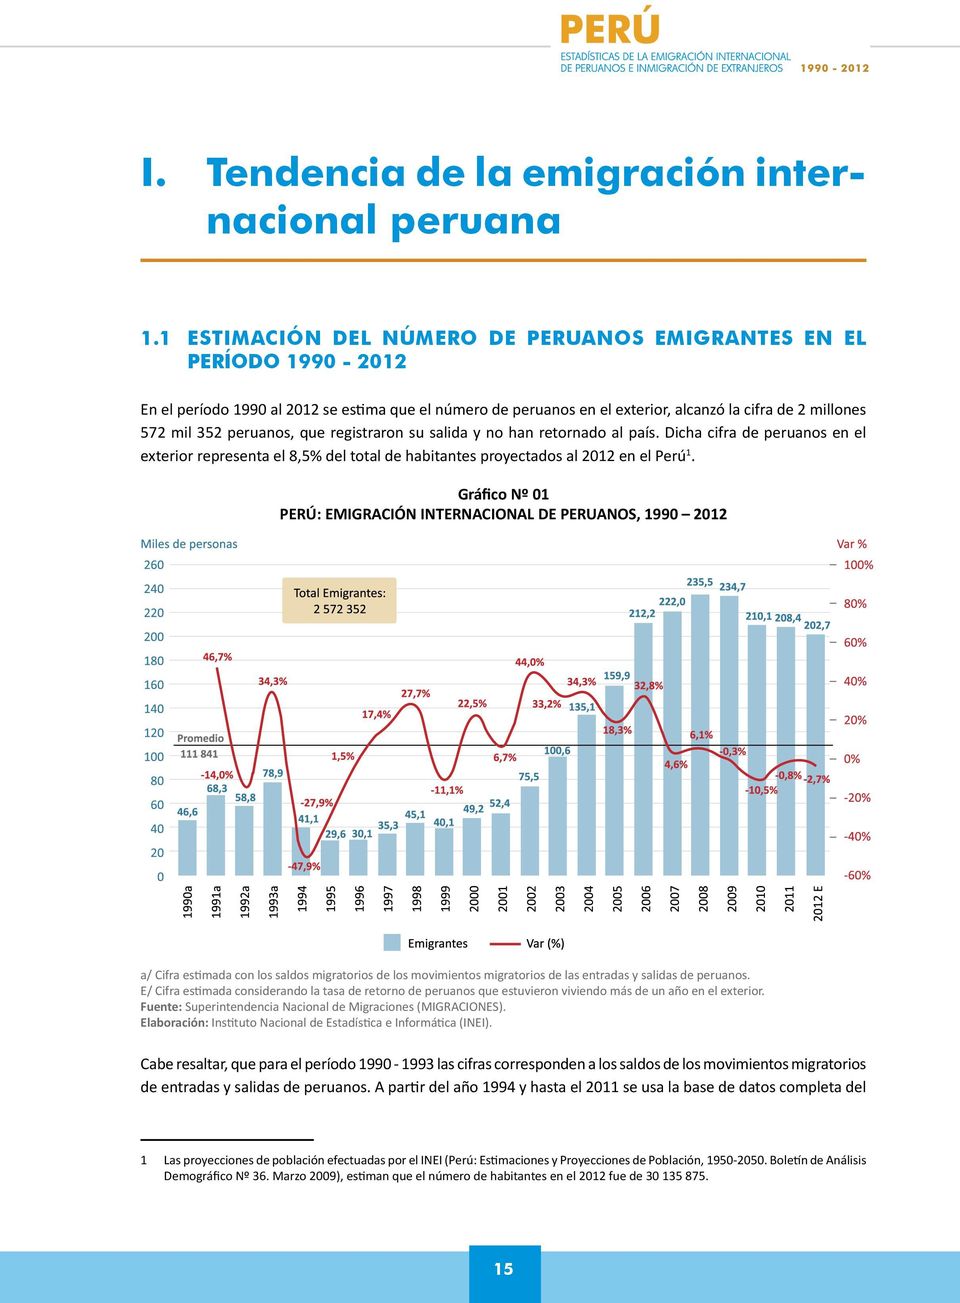 peruanos, que registraron su salida y no han retornado al país. Dicha cifra de peruanos en el exterior representa el 8,5% del total de habitantes proyectados al 2012 en el Perú 1.